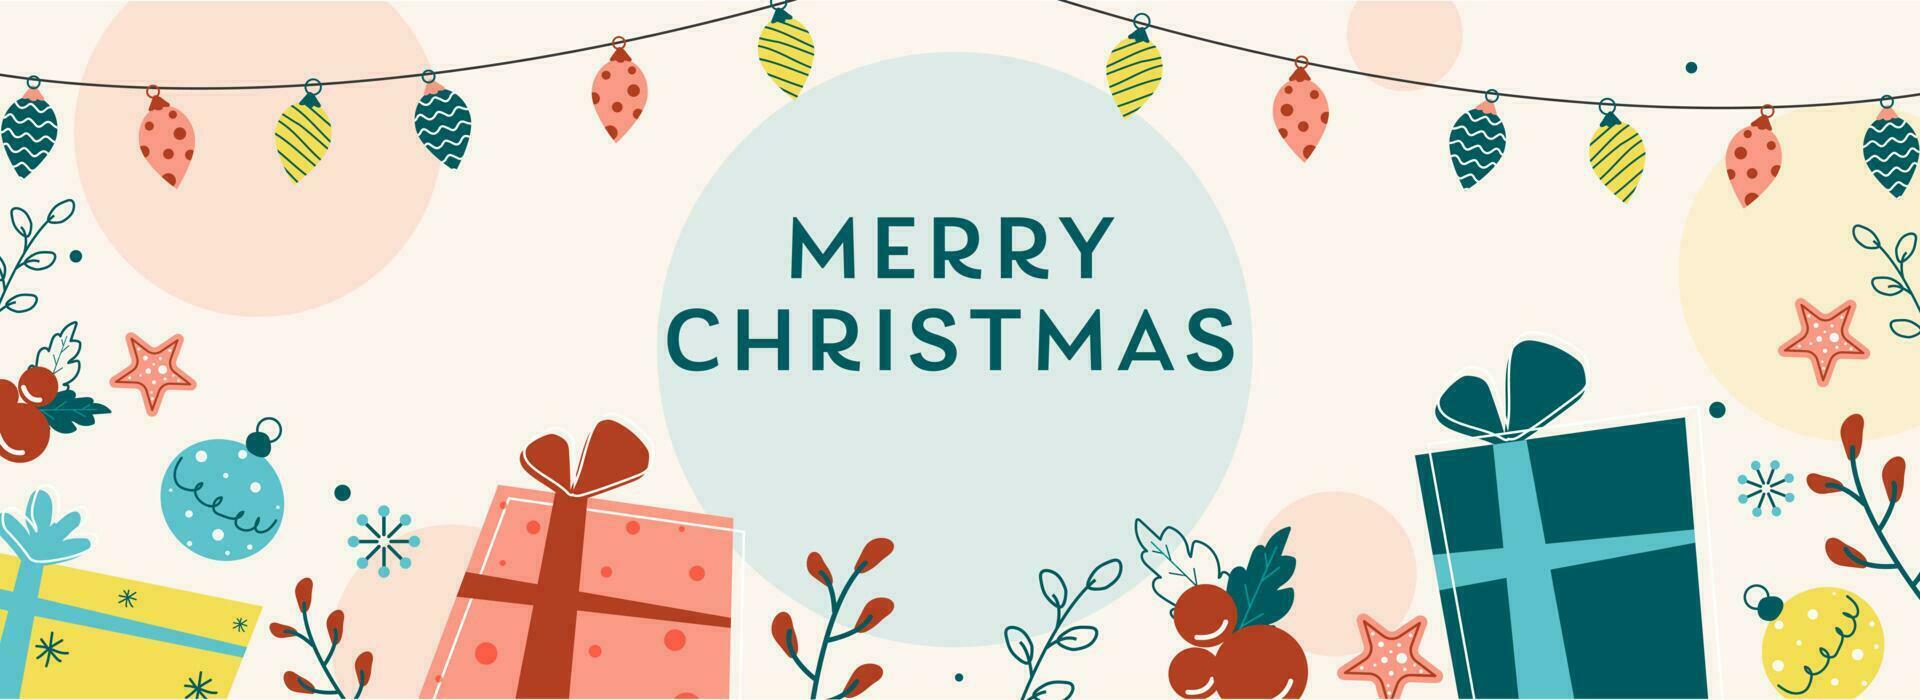 vettore illustrazione di regalo scatole con agrifoglio frutti di bosco, stelle, palline e illuminazione ghirlanda decorato sfondo per allegro Natale.